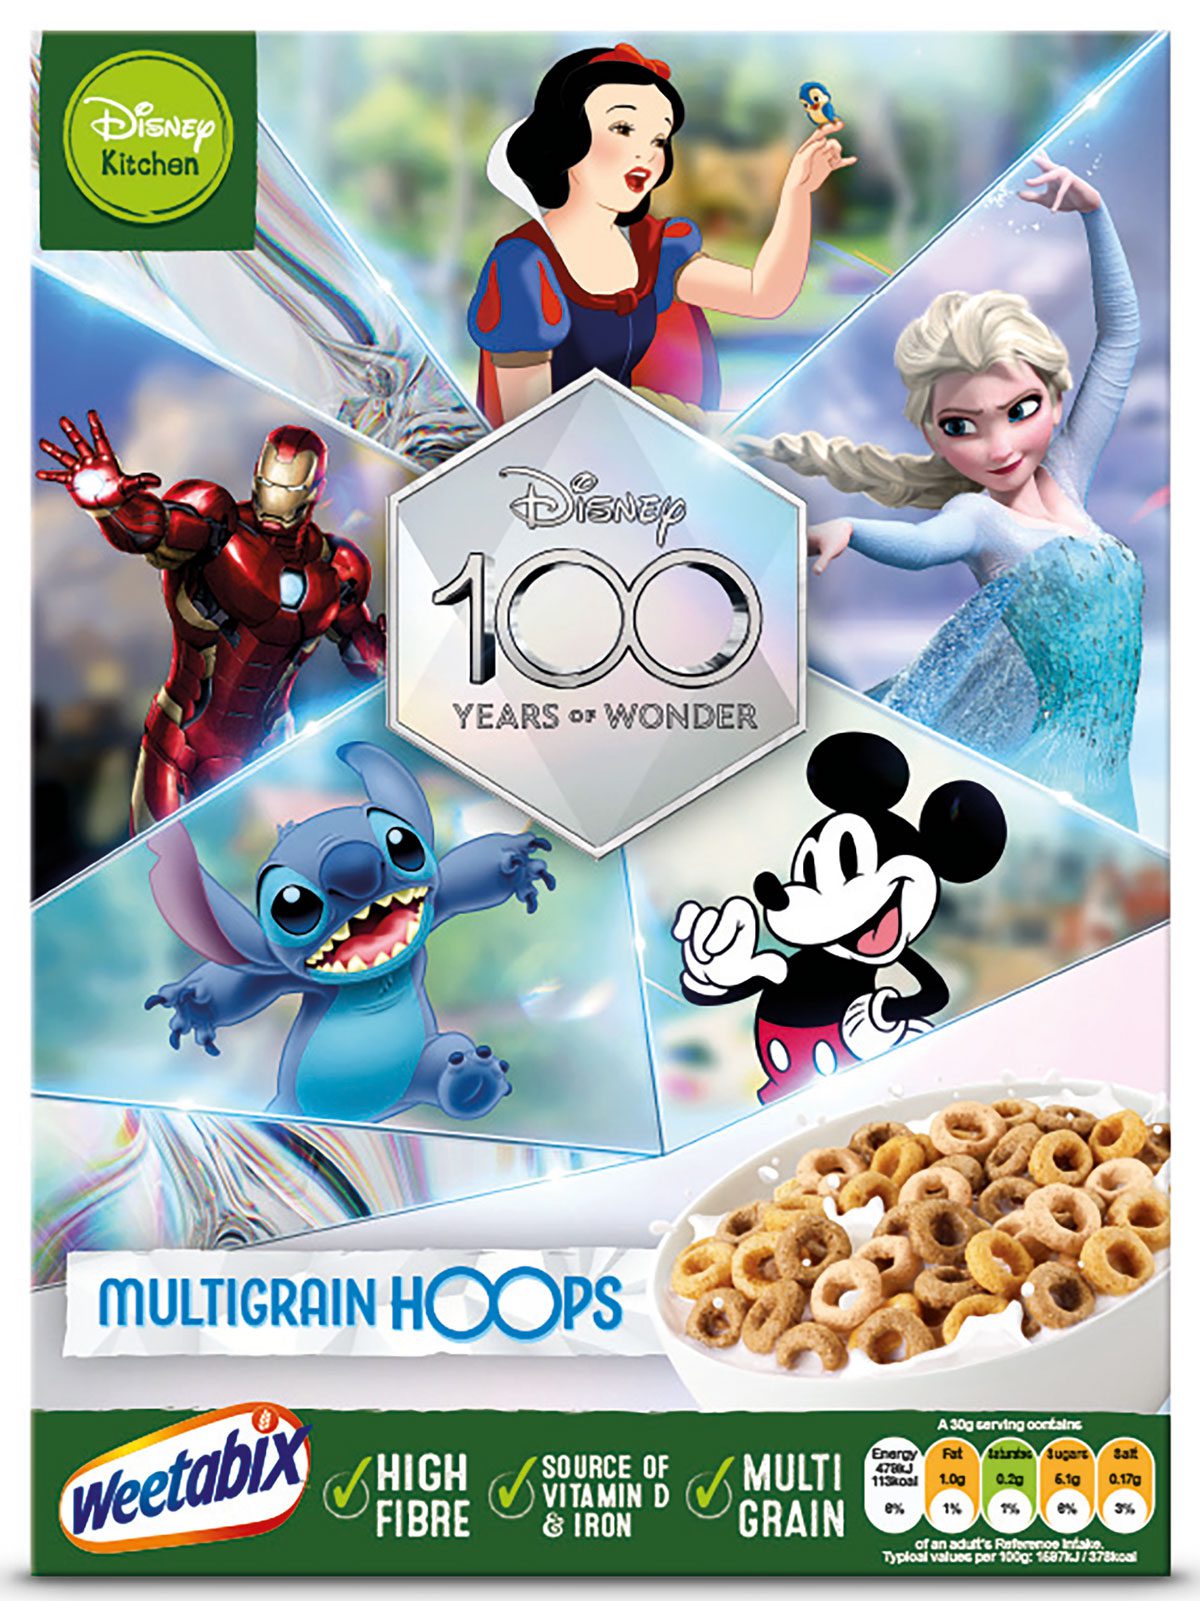 The Weetabix Walt Disney 100 Years of Wonder Multigrain Hoops pack.